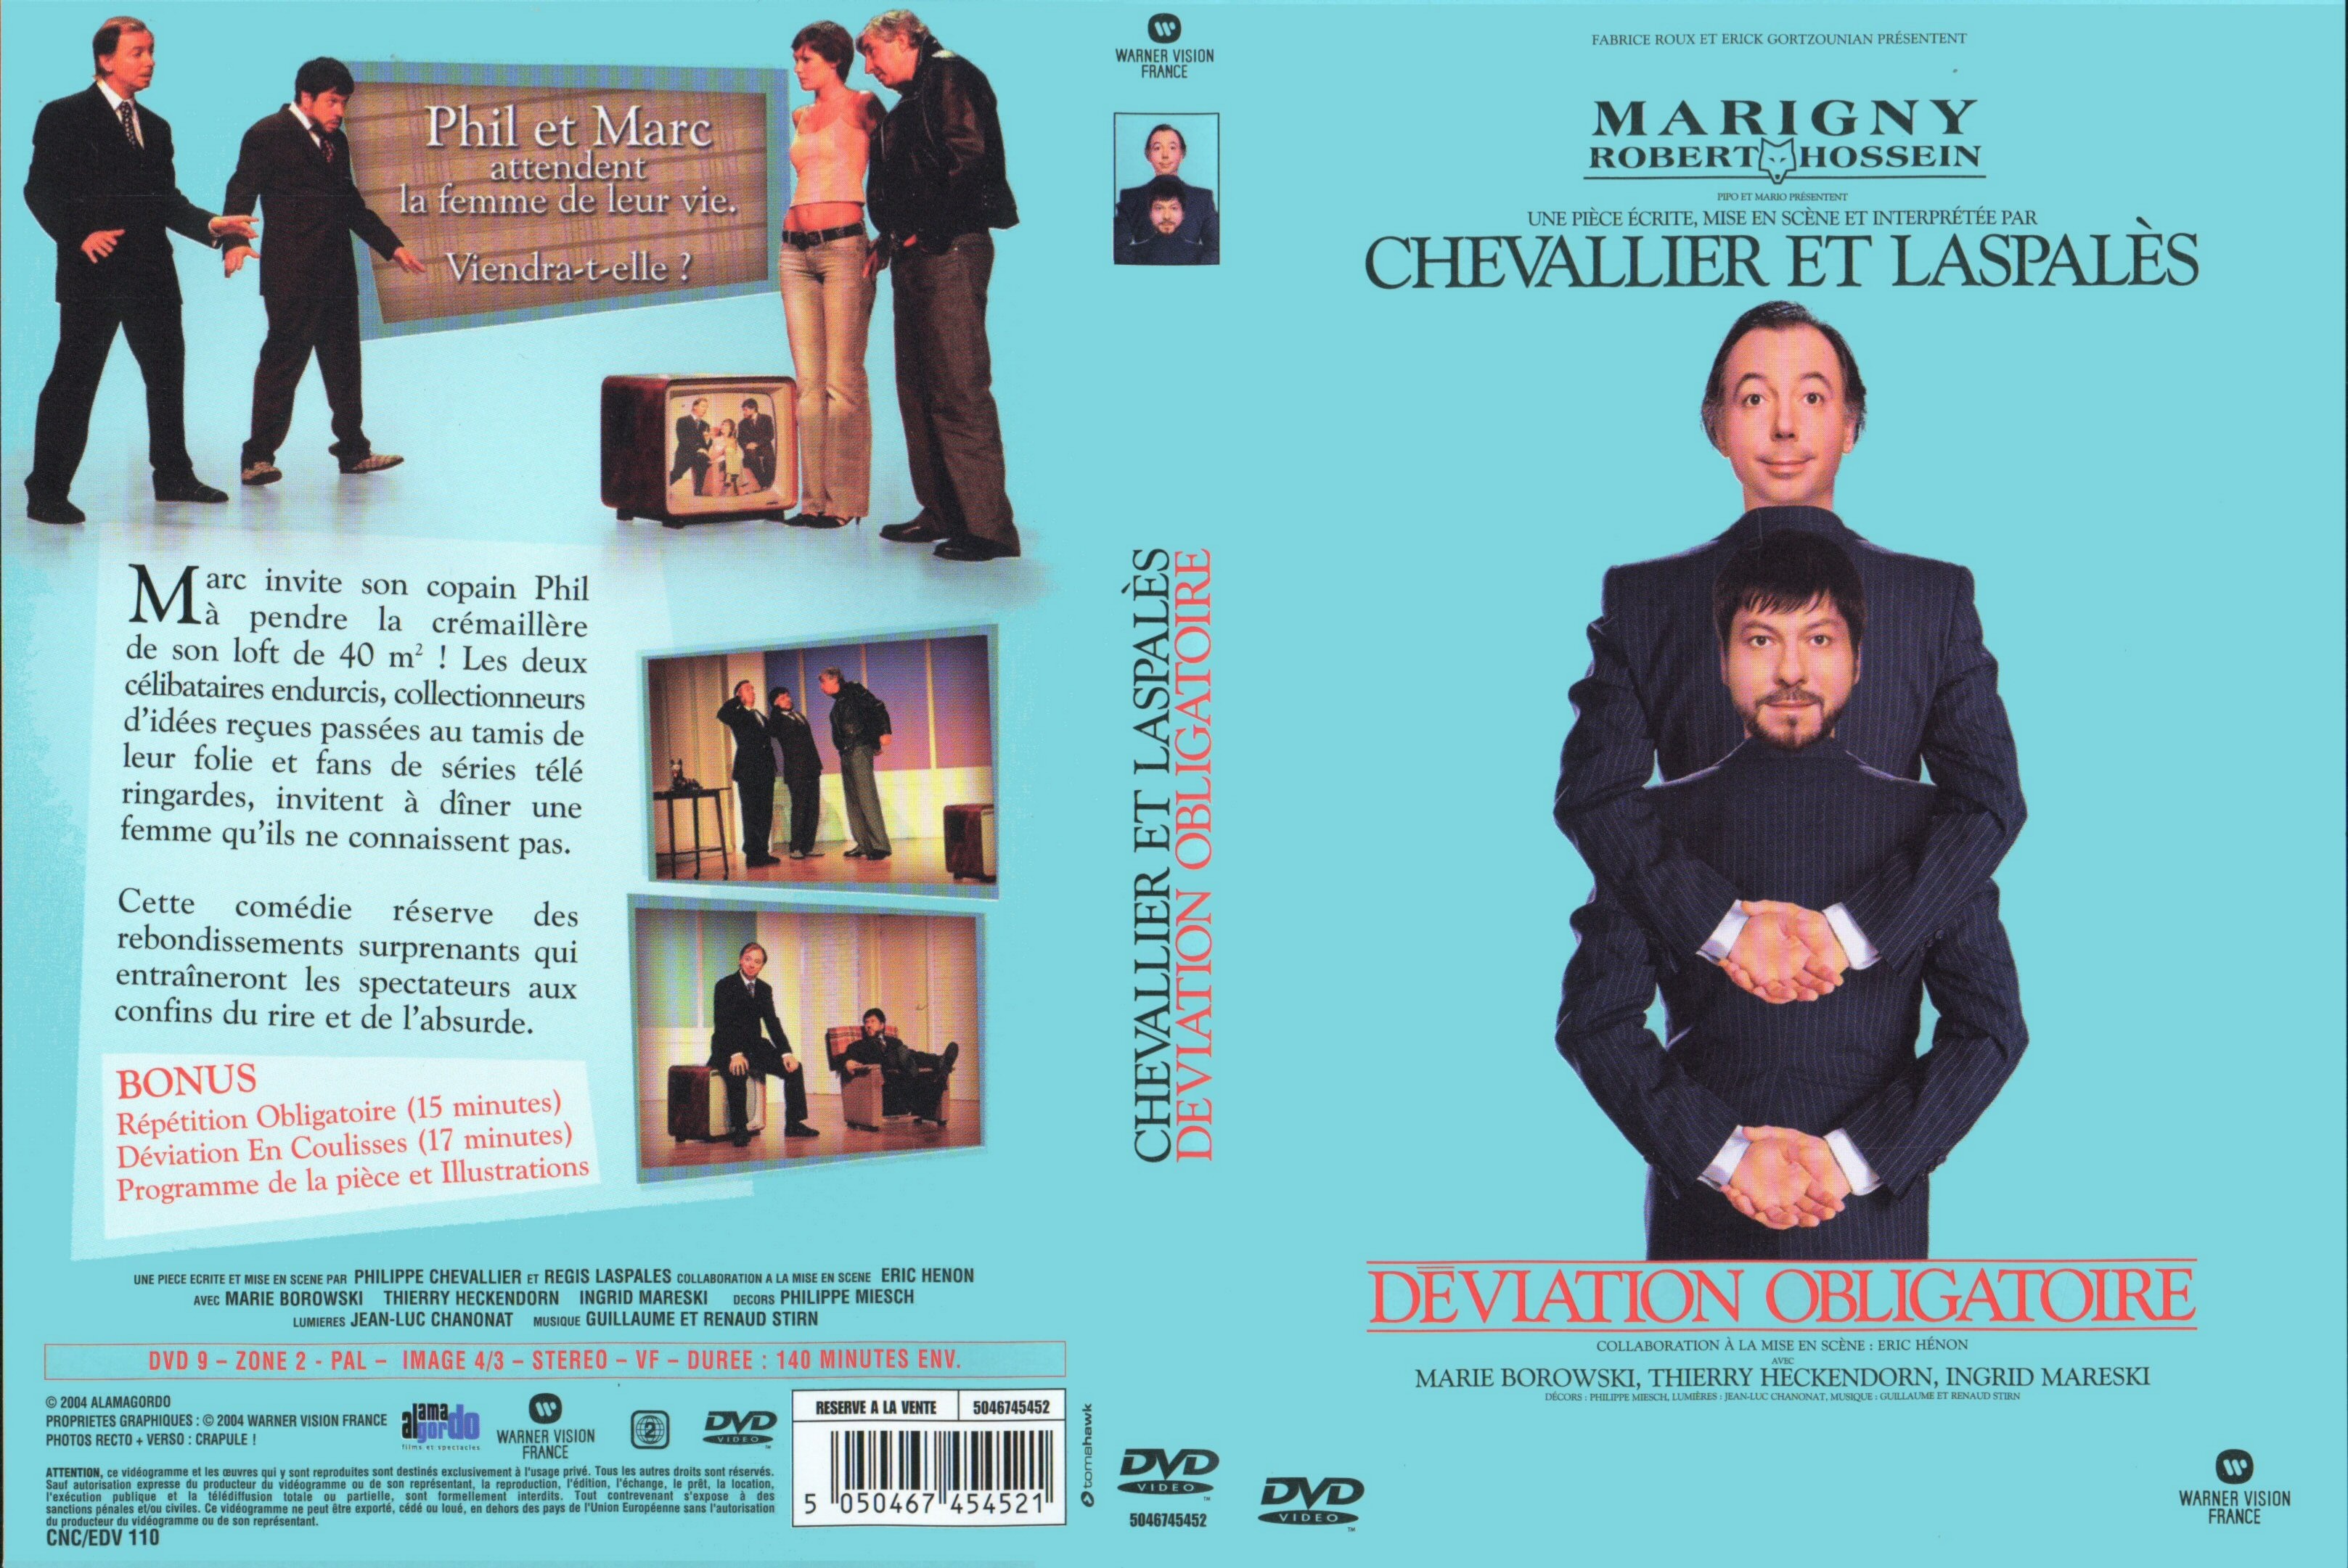 Jaquette DVD Chevalier et laspales deviation obligatoire